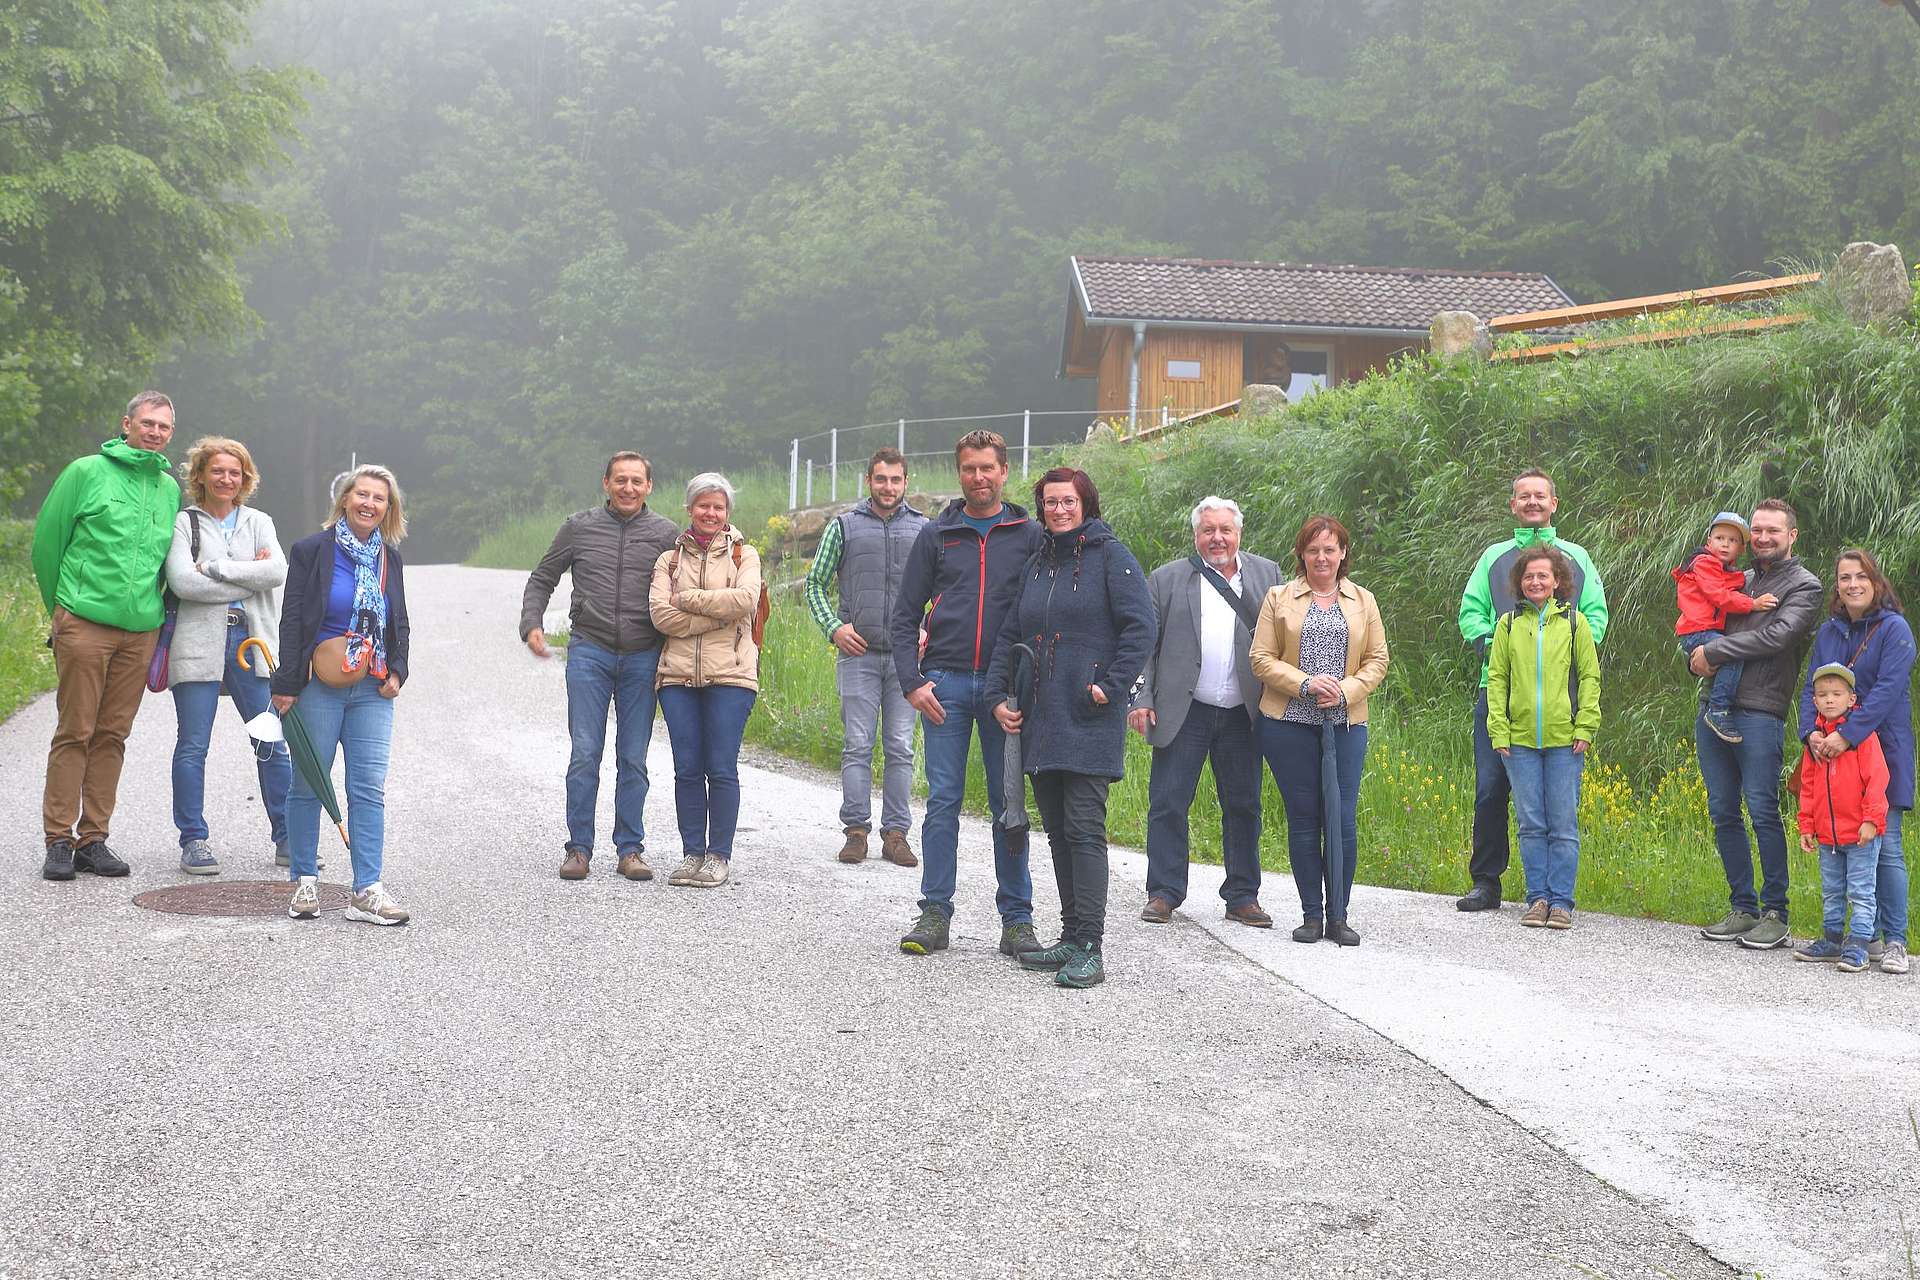 Gruppenfoto der Exkursion, 15 Personen  auf einer Strasse vor Wald